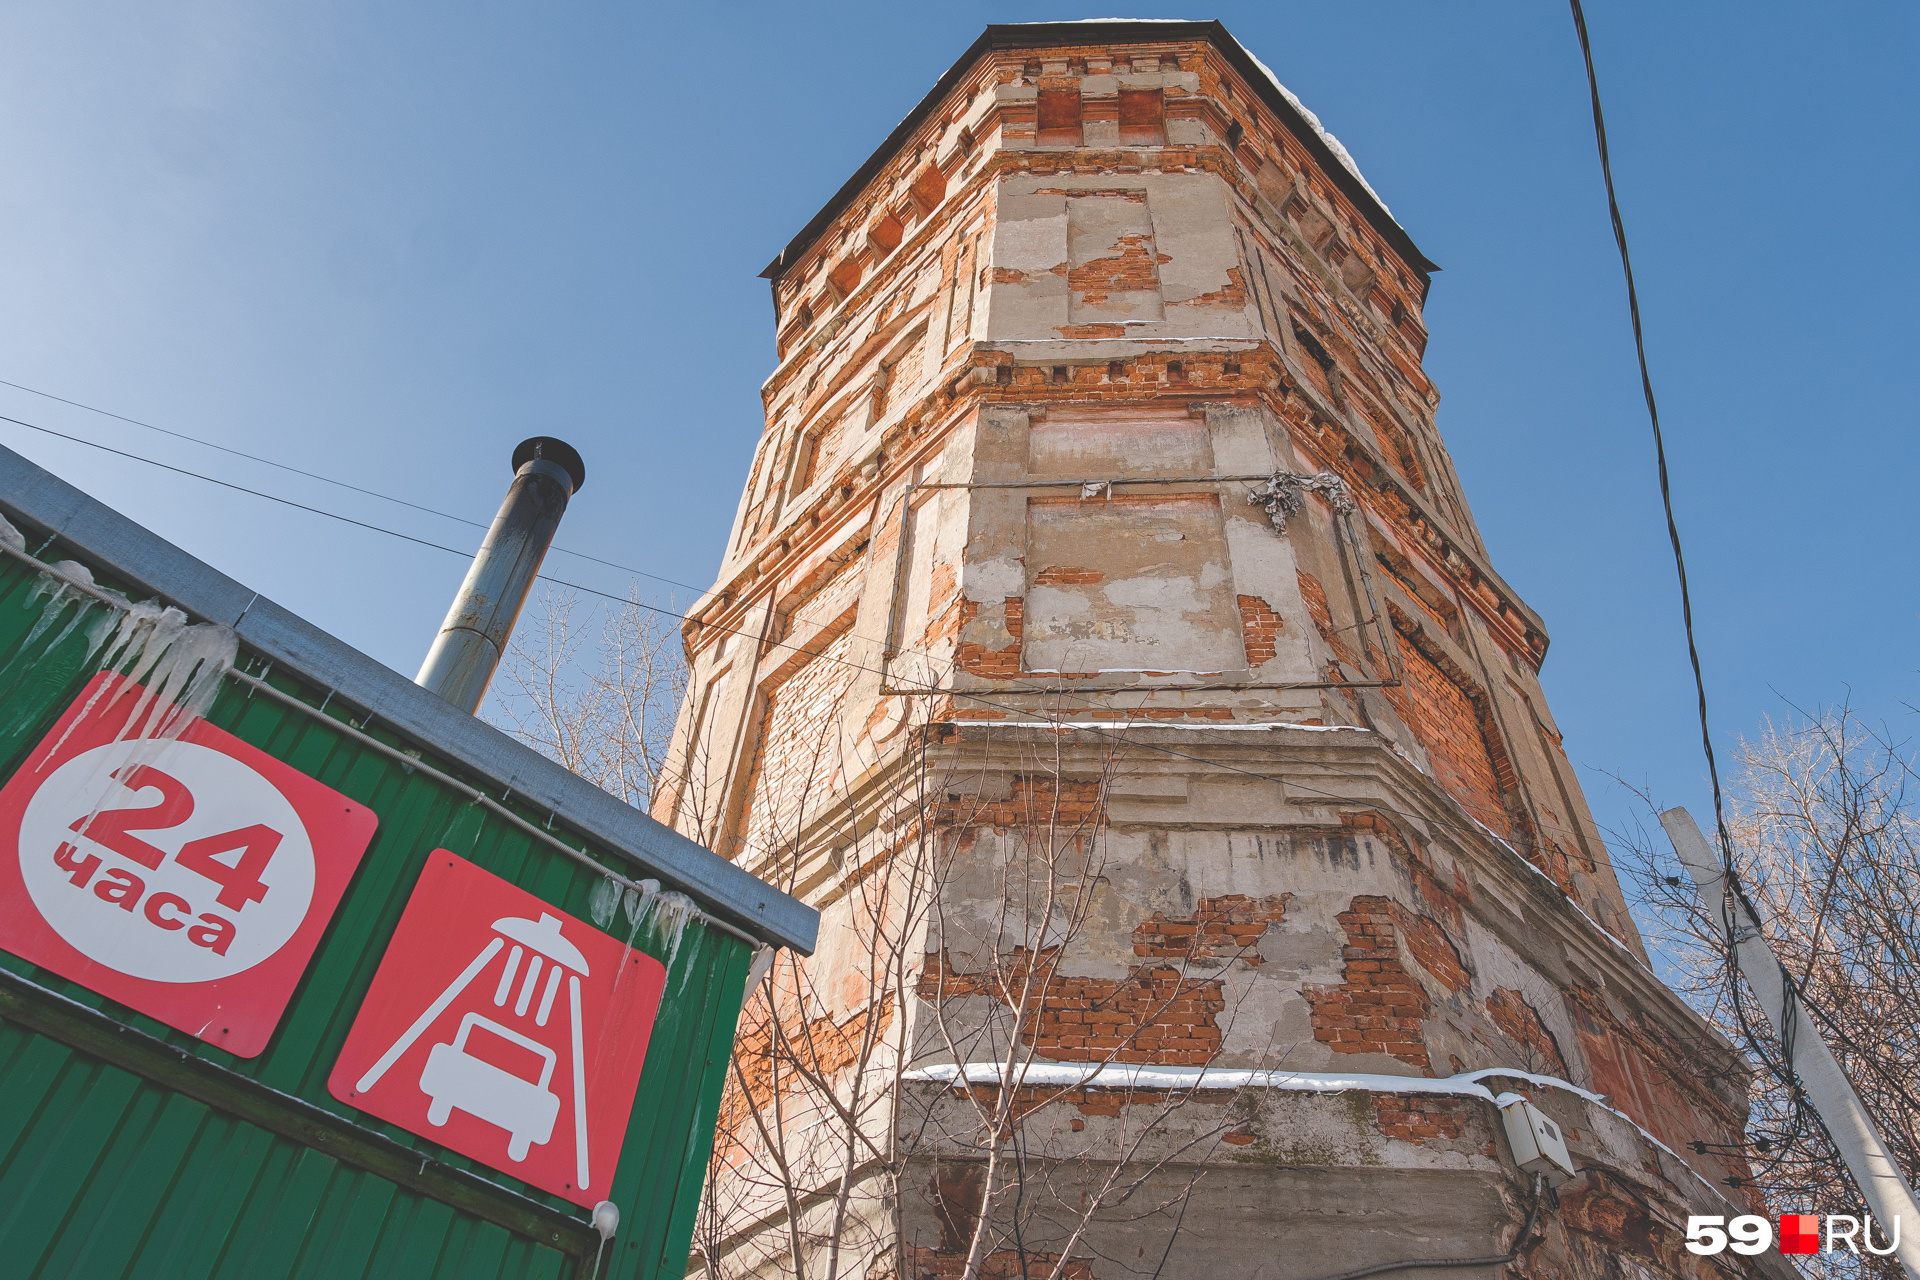 Башня на Барамзиной имеет восемь граней